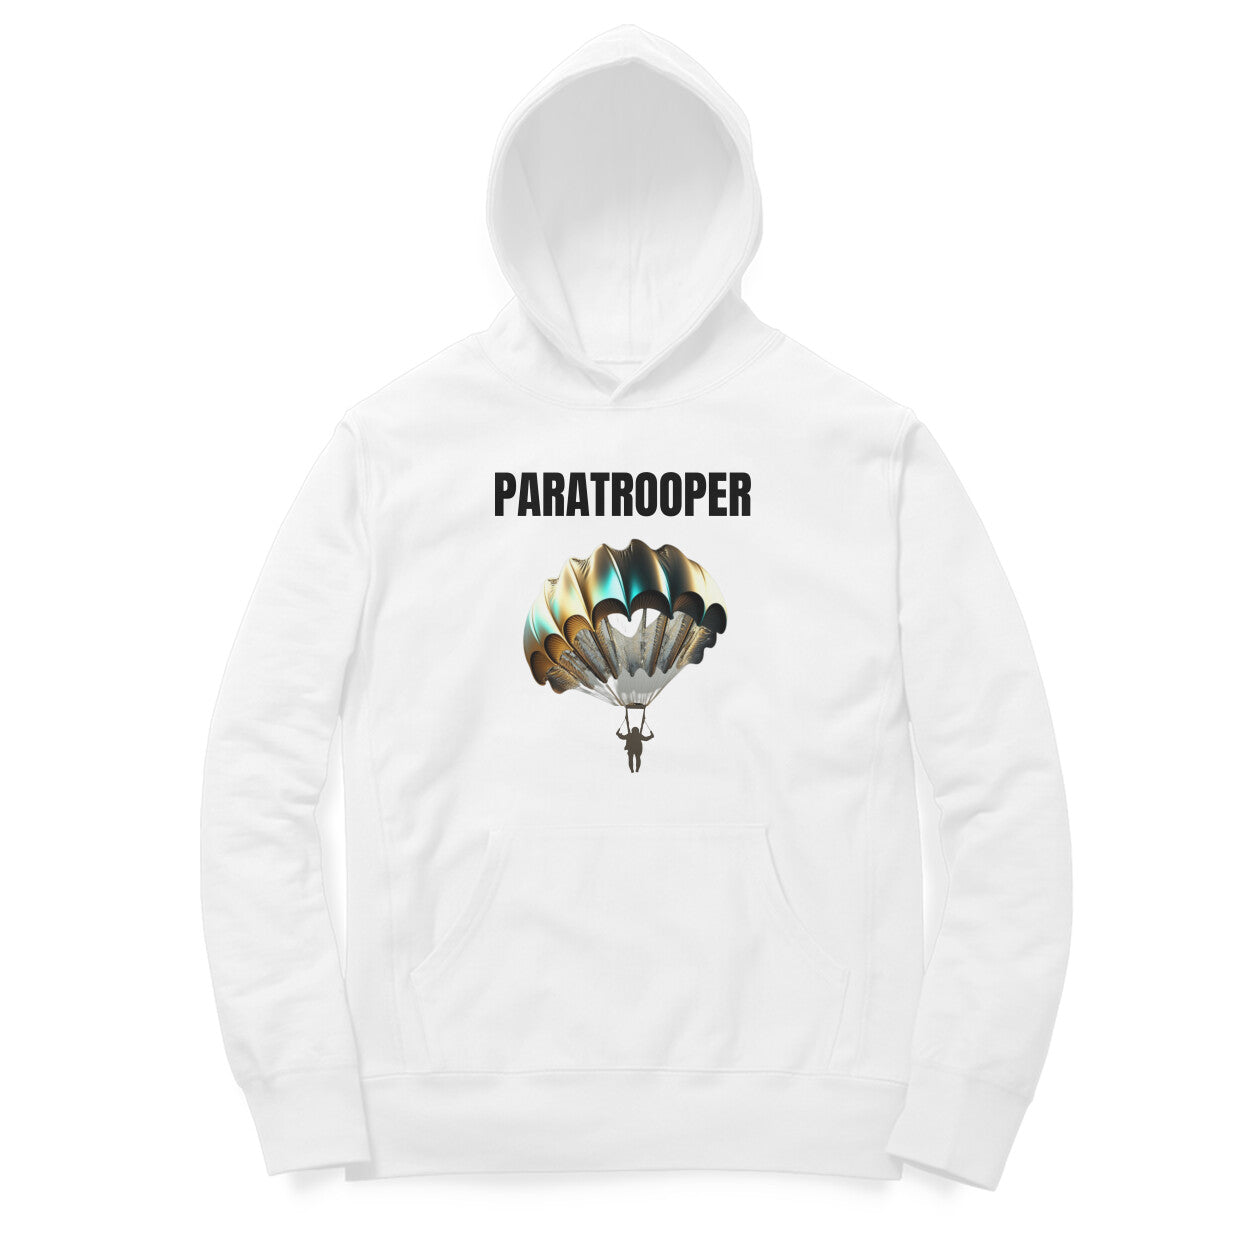 Paratrooper' hoodie